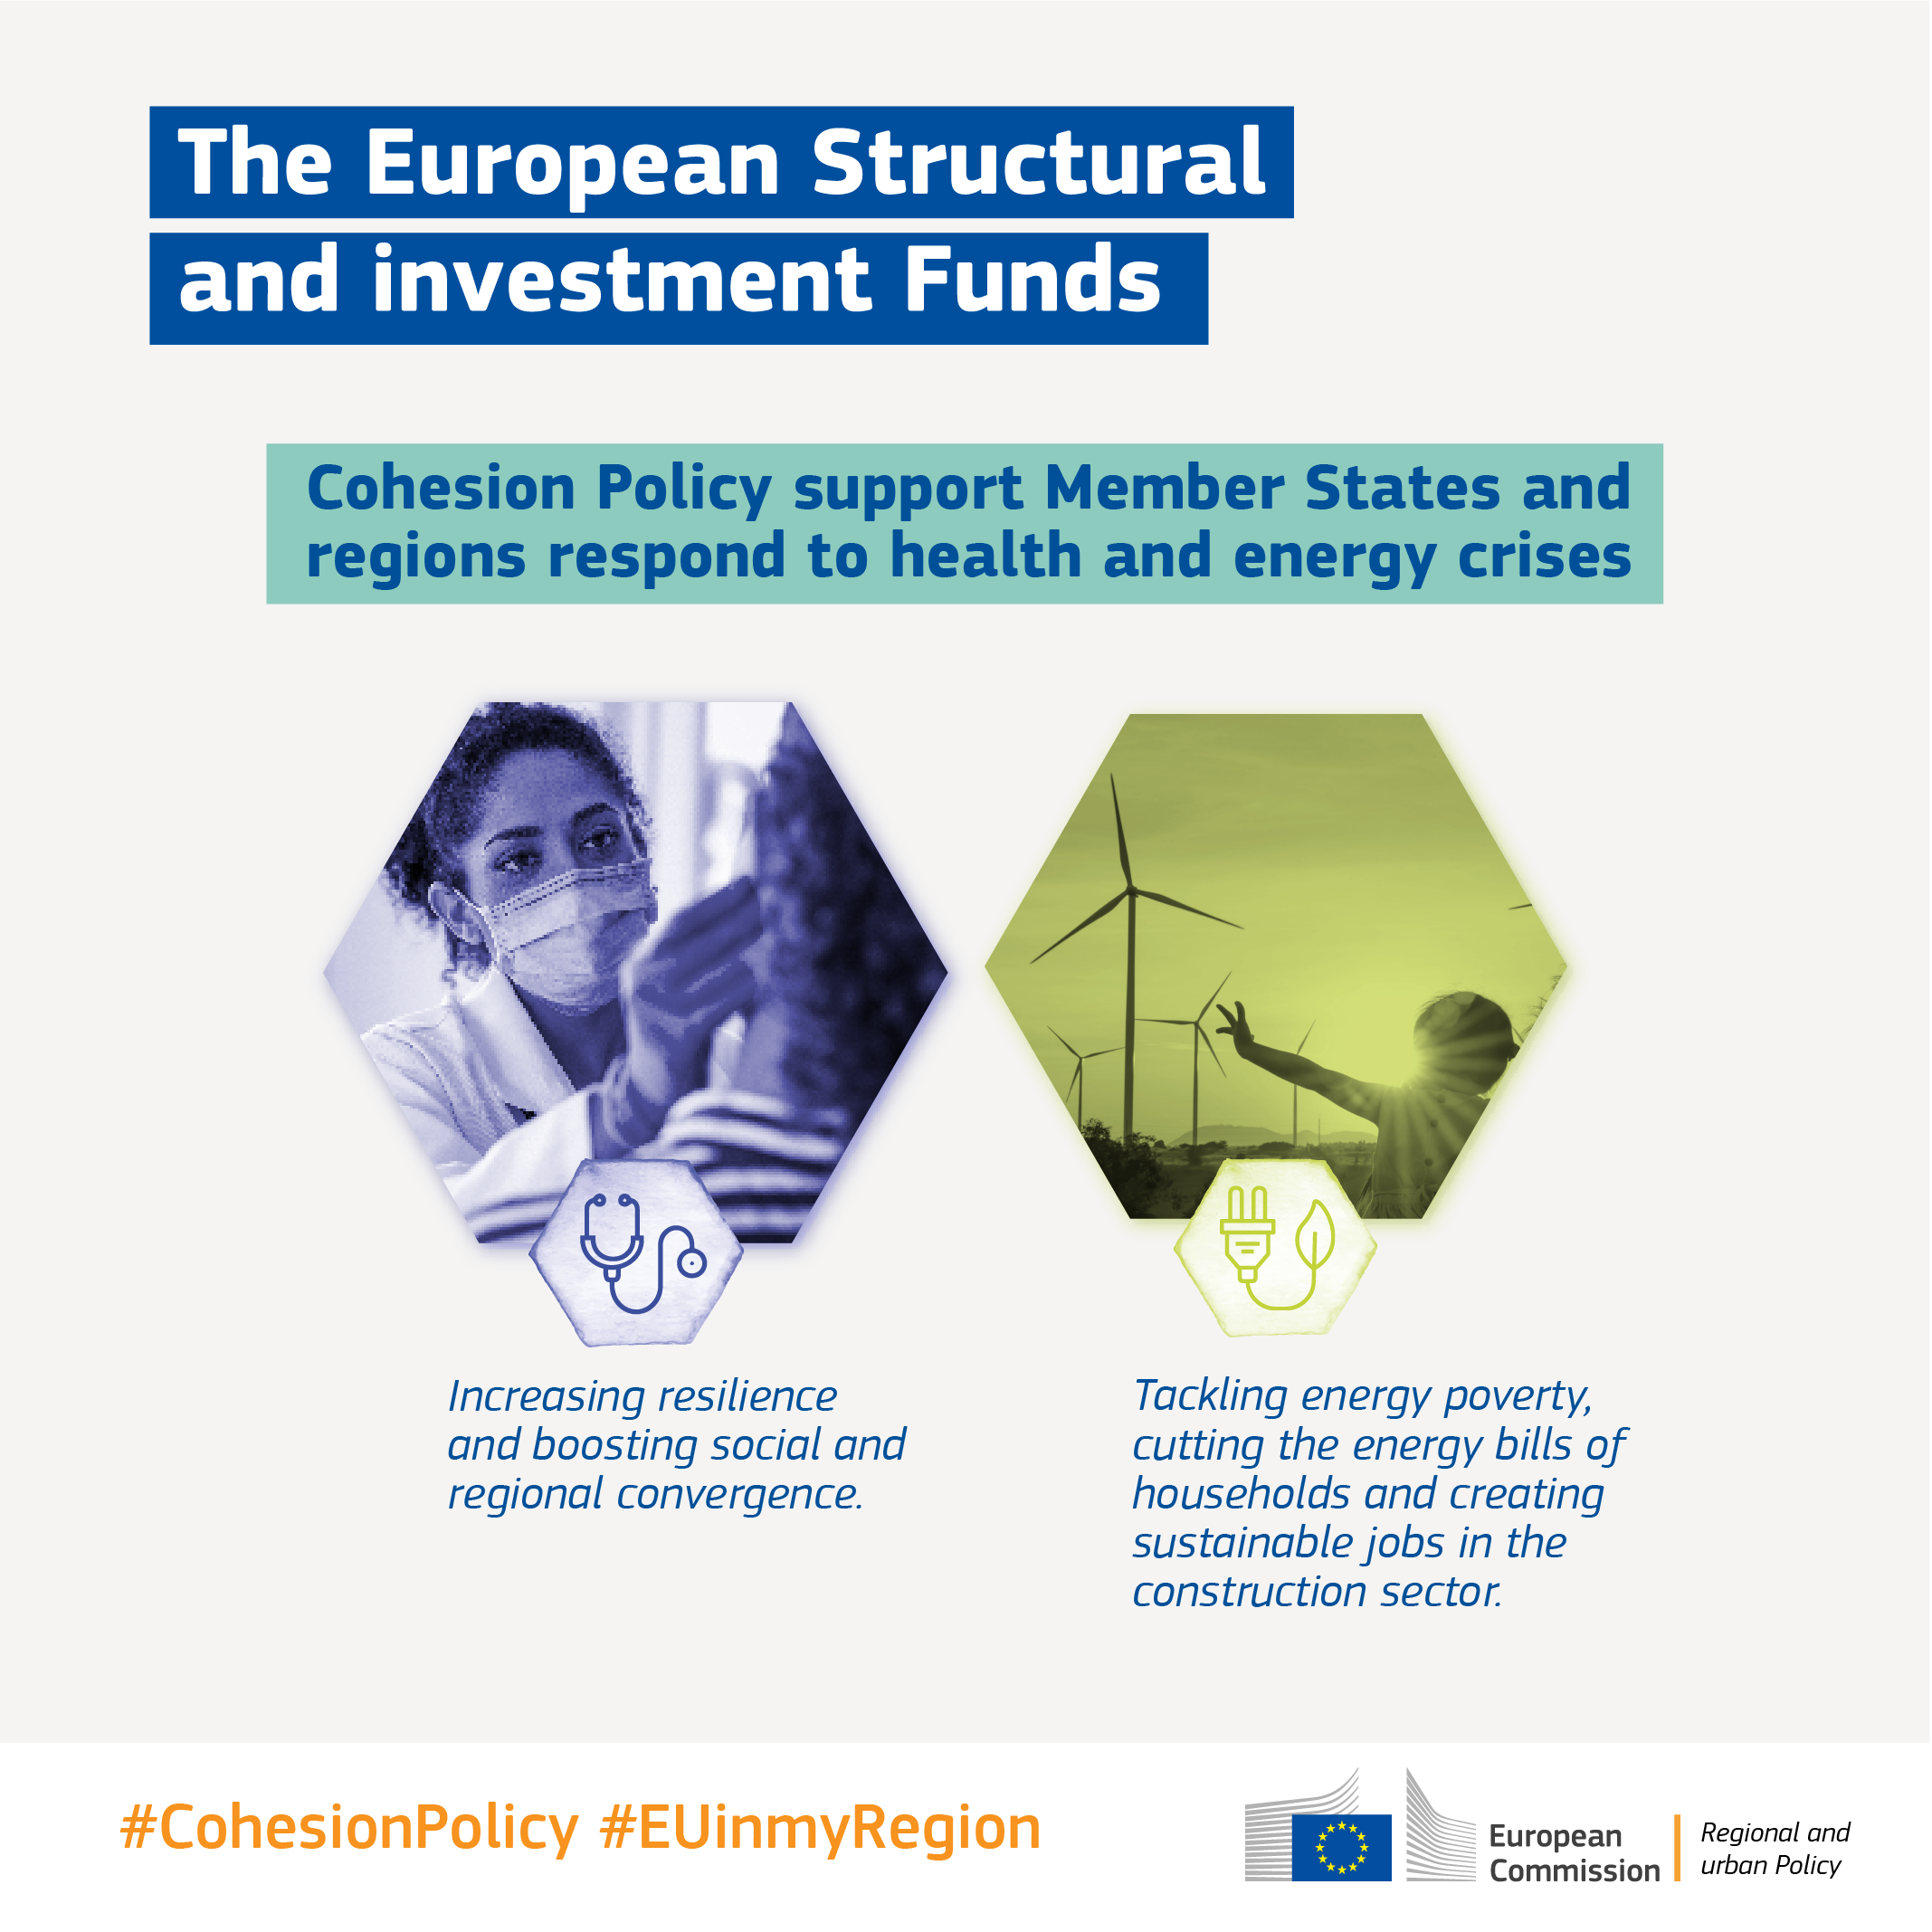 EU's samhørighedspolitik: De europæiske struktur- og investeringsfonde har ydet støtte til SMV'er, beskæftigelse af millioner mennesker og produktion af ren energi